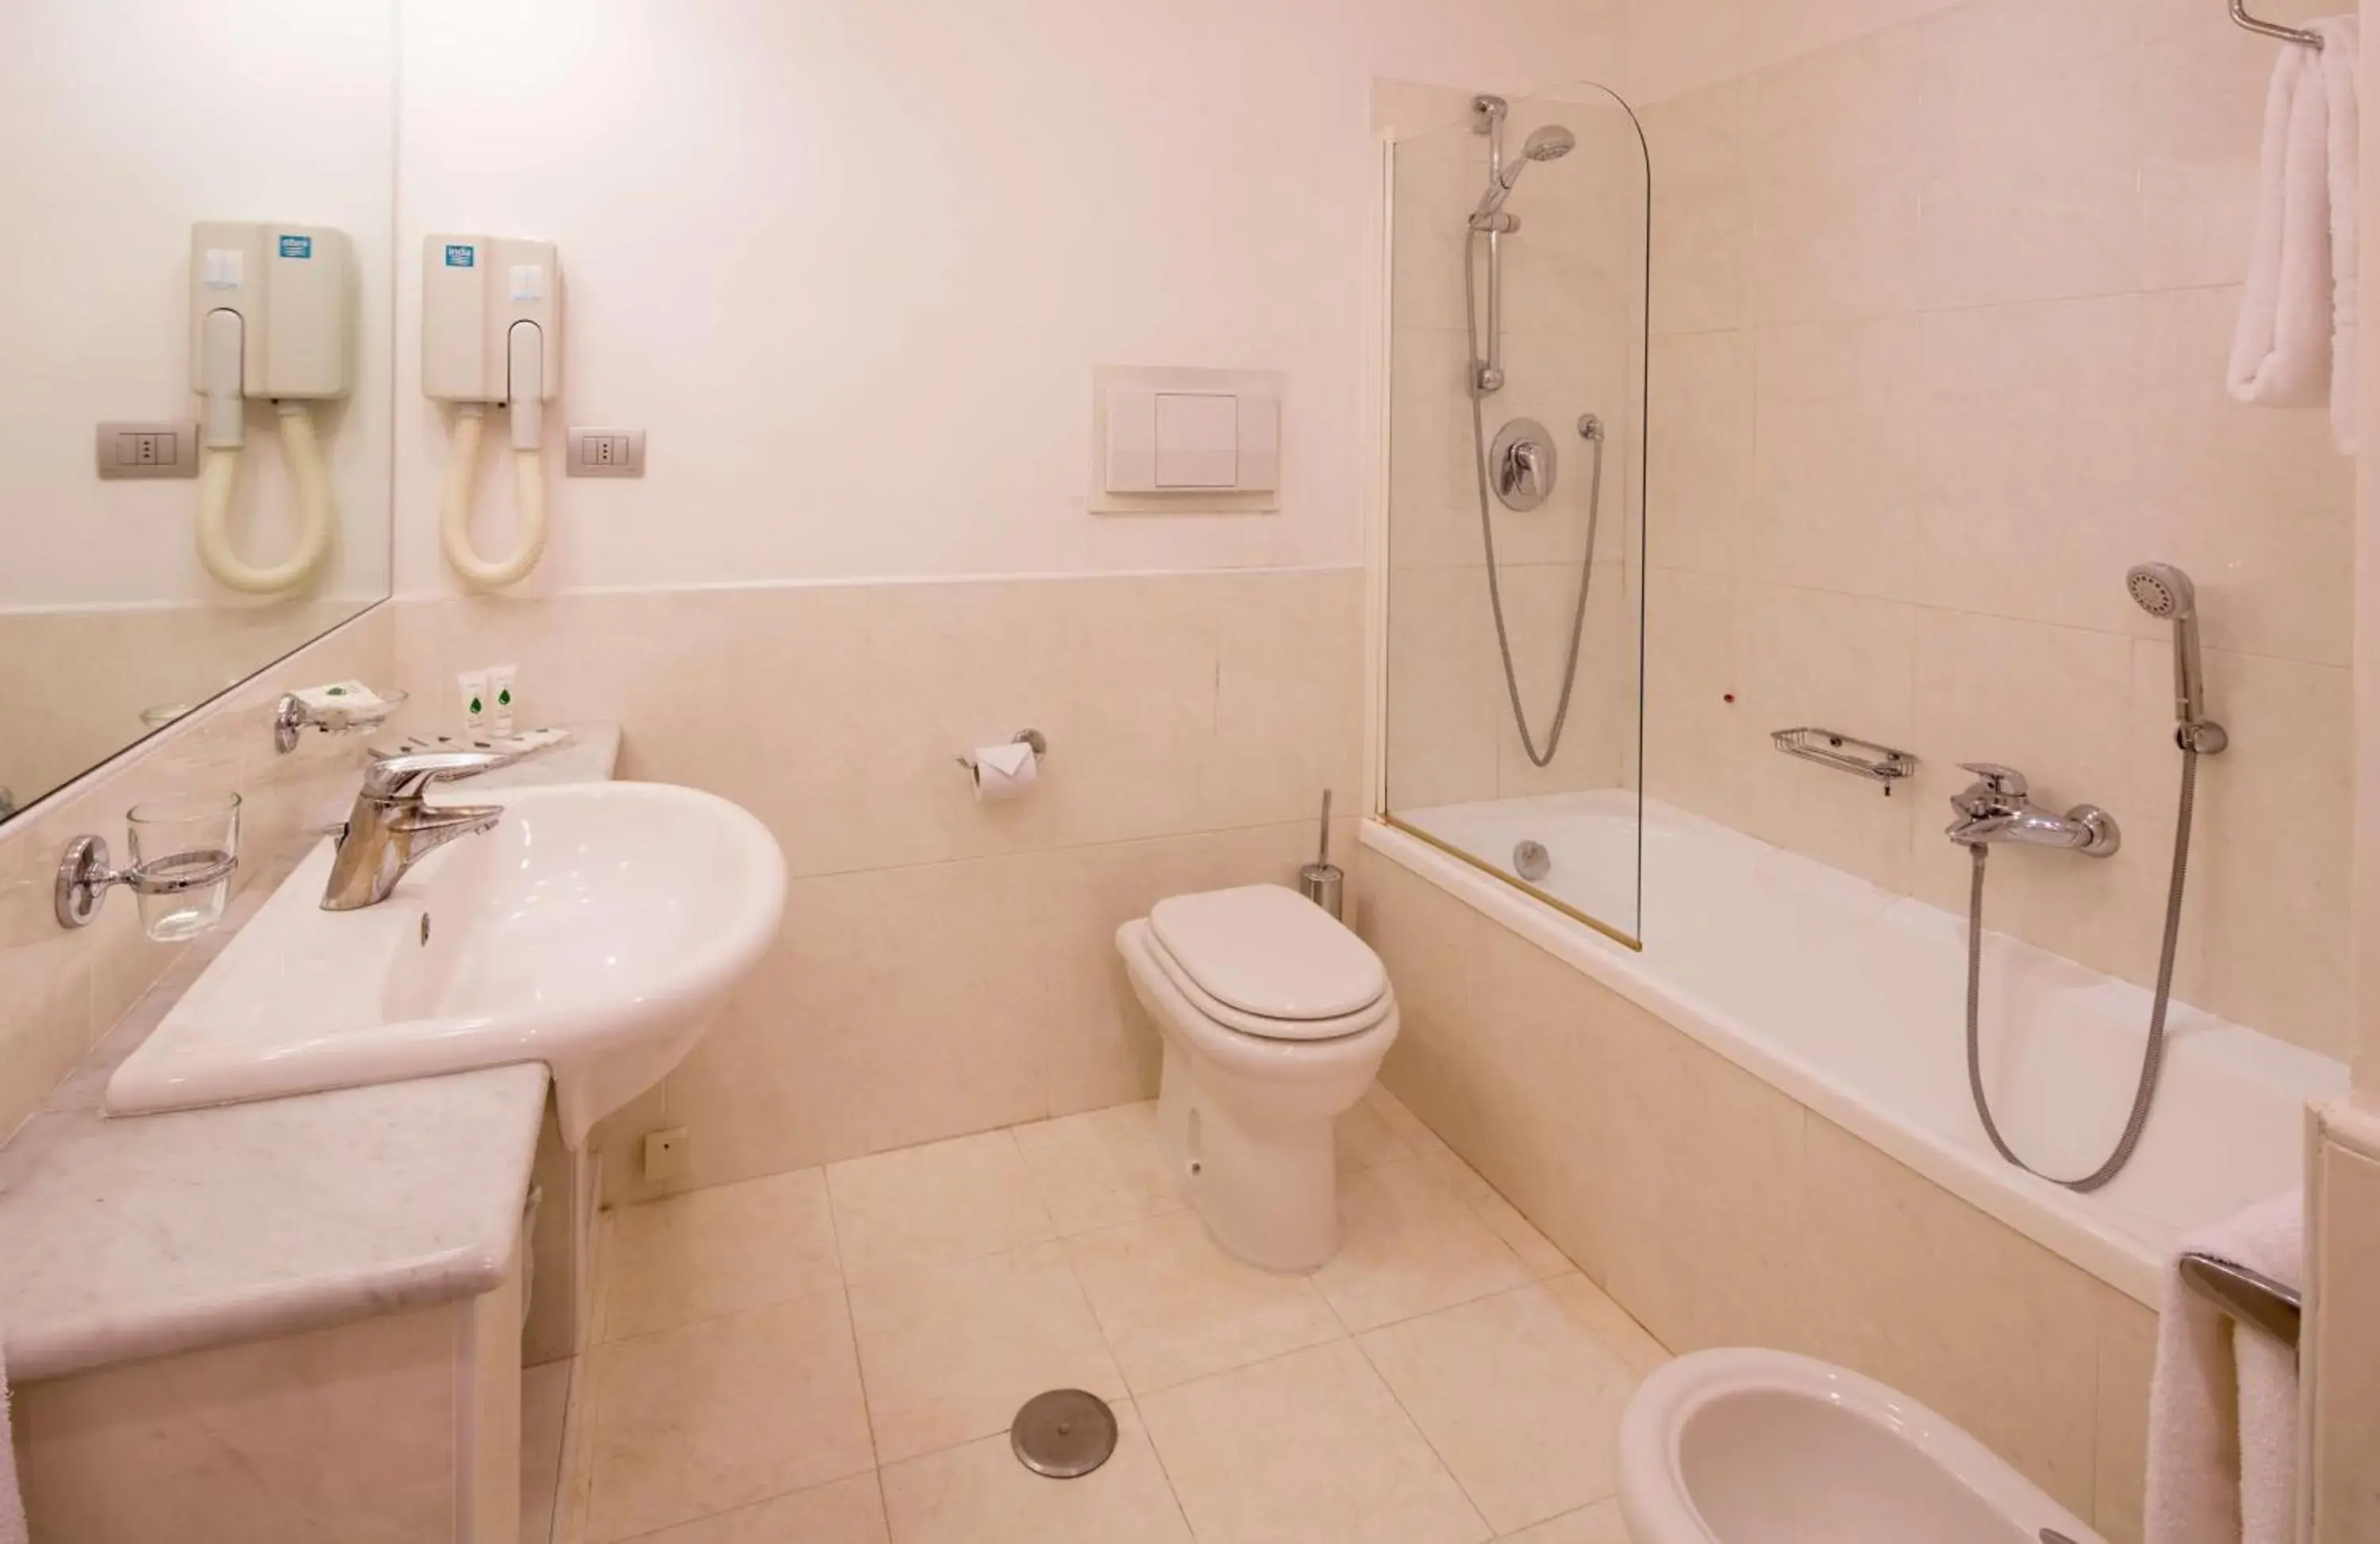 Bathroom in Best Western Hotel I Triangoli